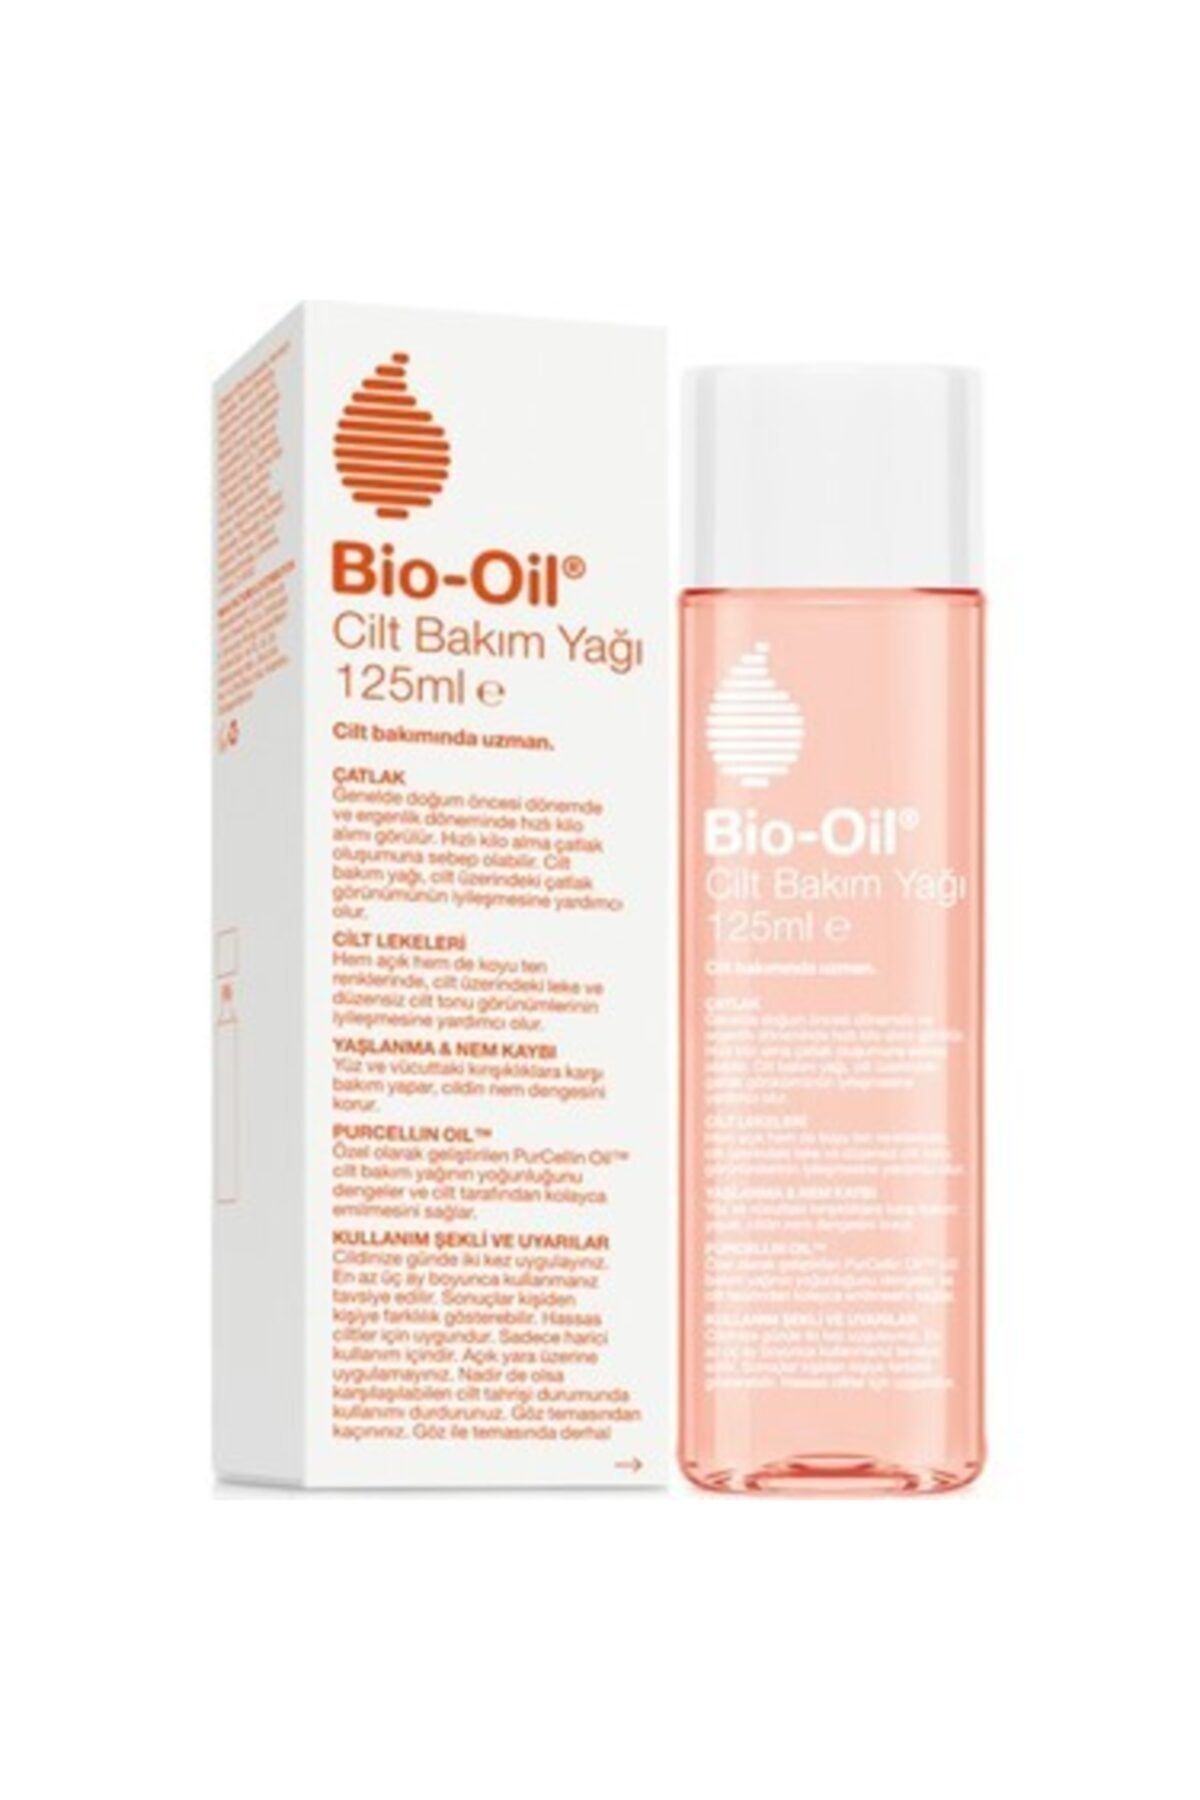 Bio-Oil Nemlendirici Cilt Bakım Yağı & Çatlaklara Karşı Etkili 125 ml